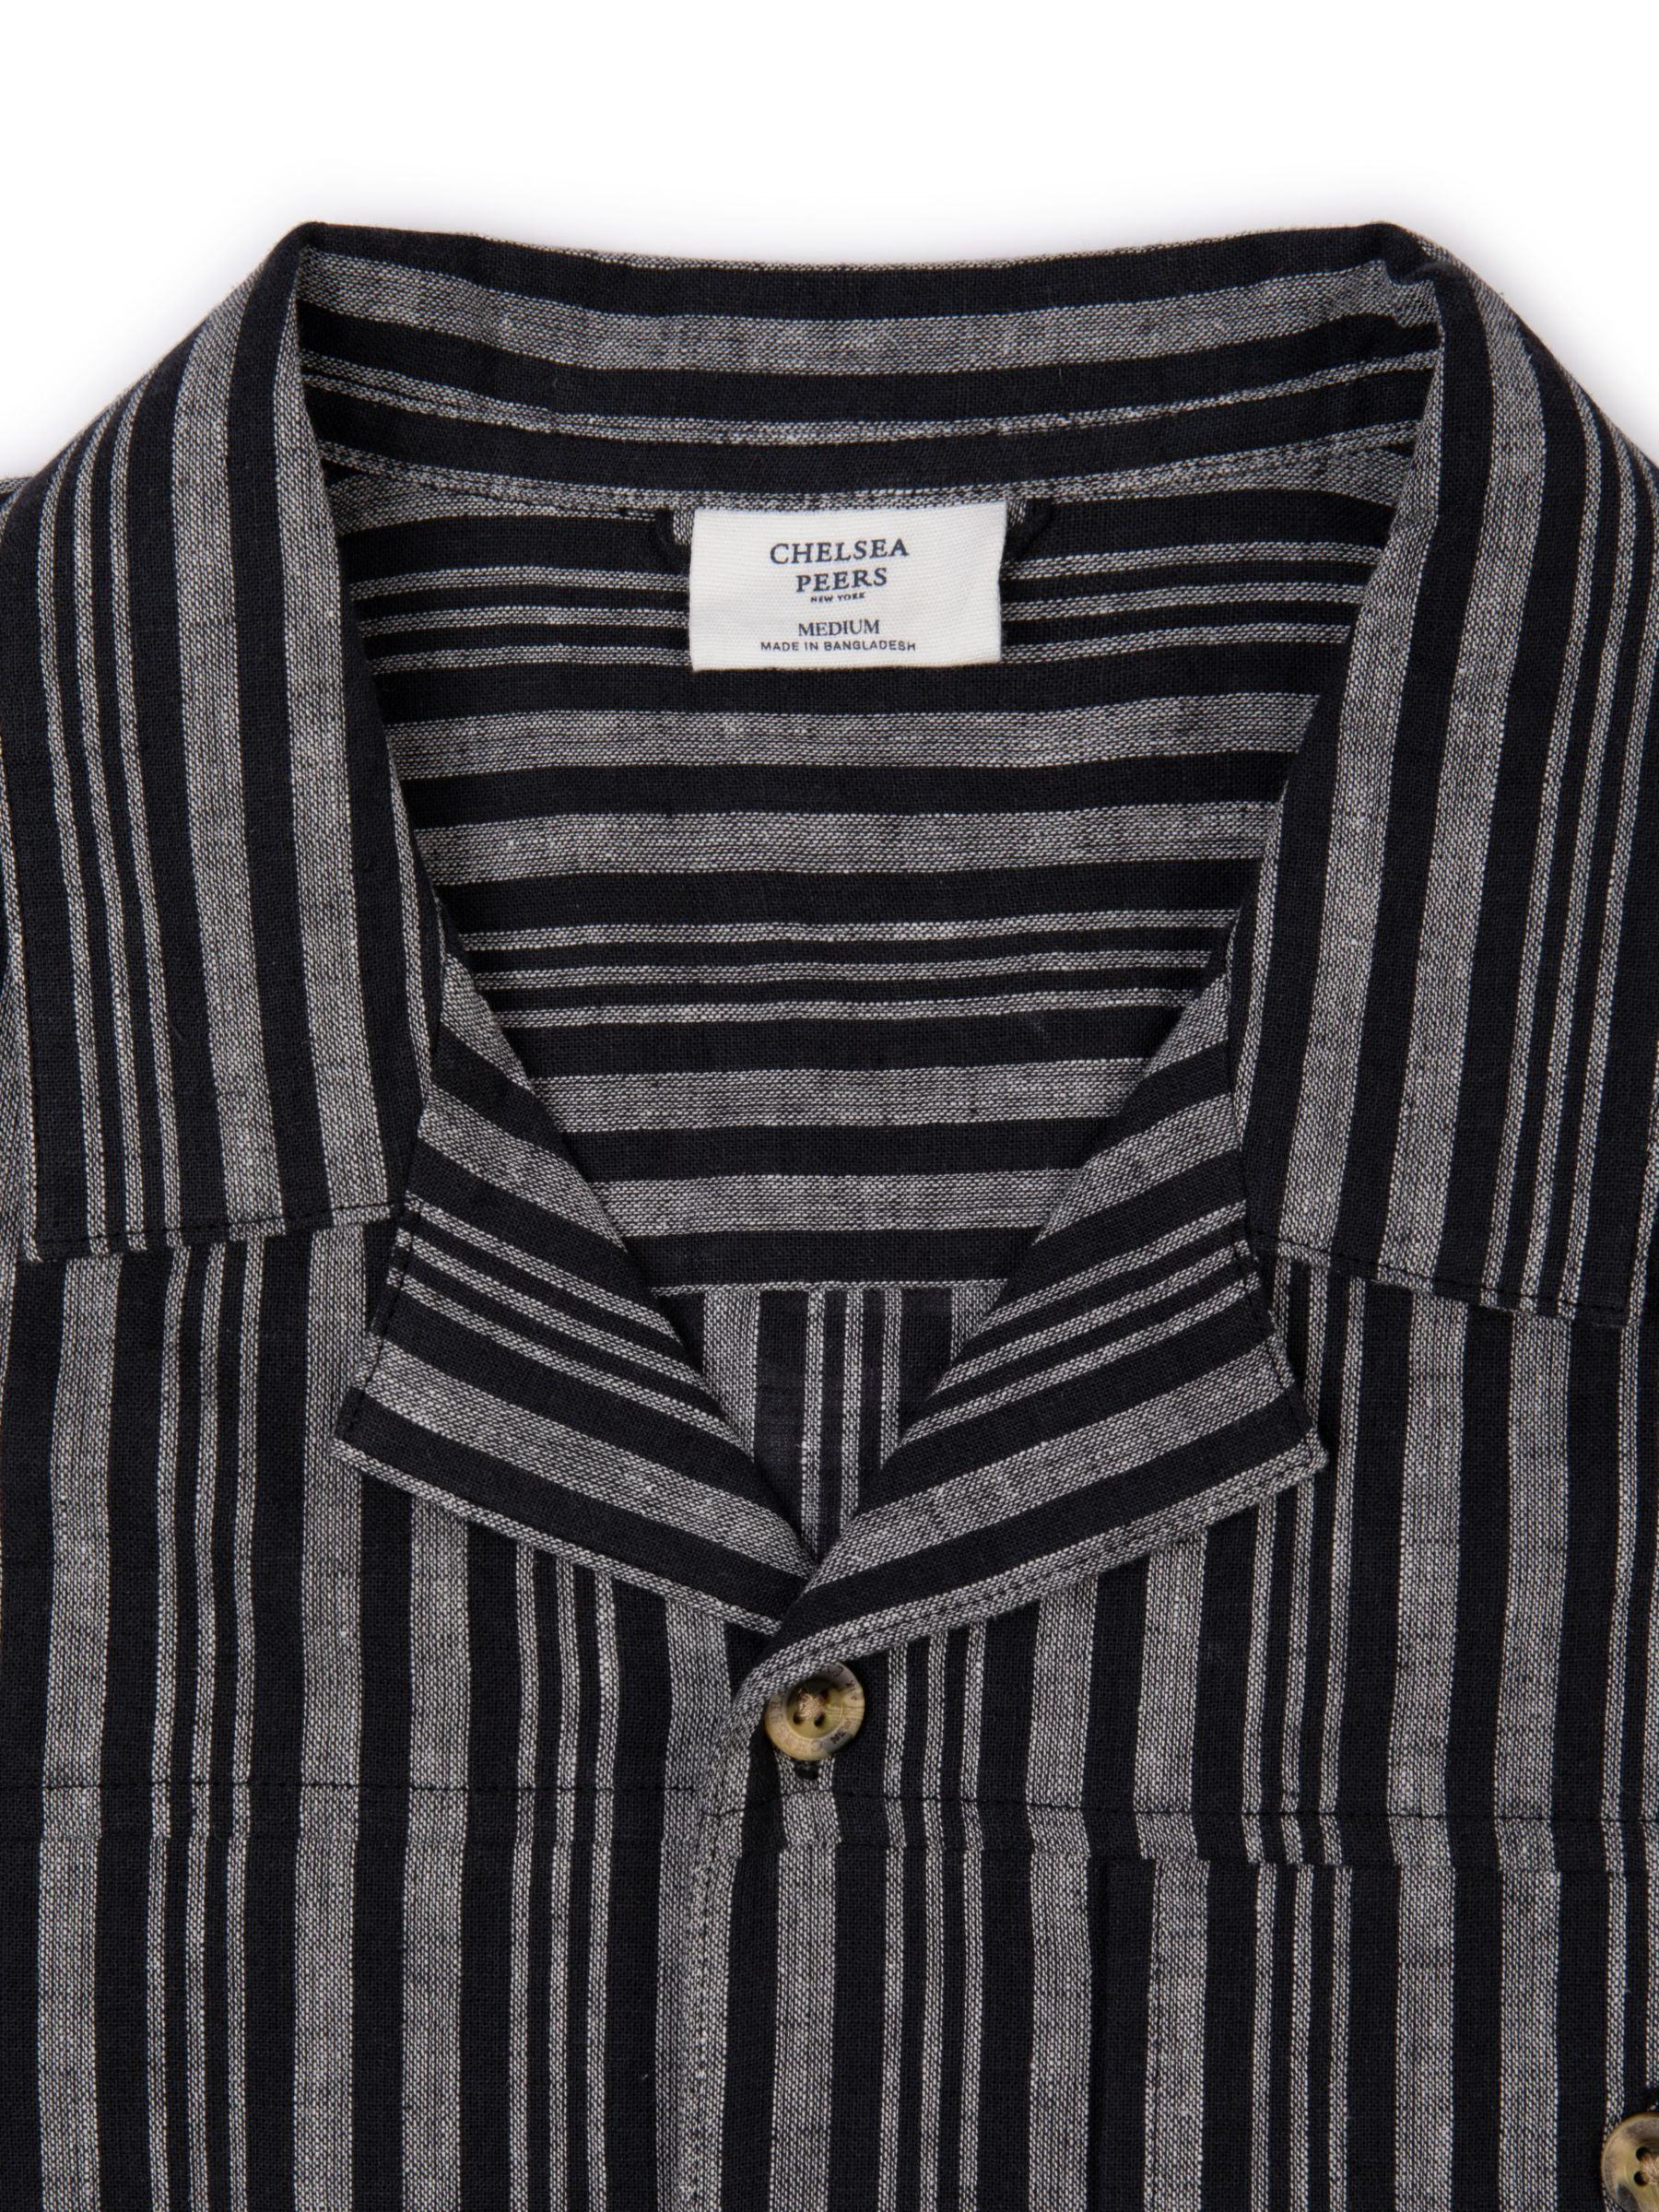 Buy Chelsea Peers Linen Blend Stripe Shirt, Black/White Online at johnlewis.com